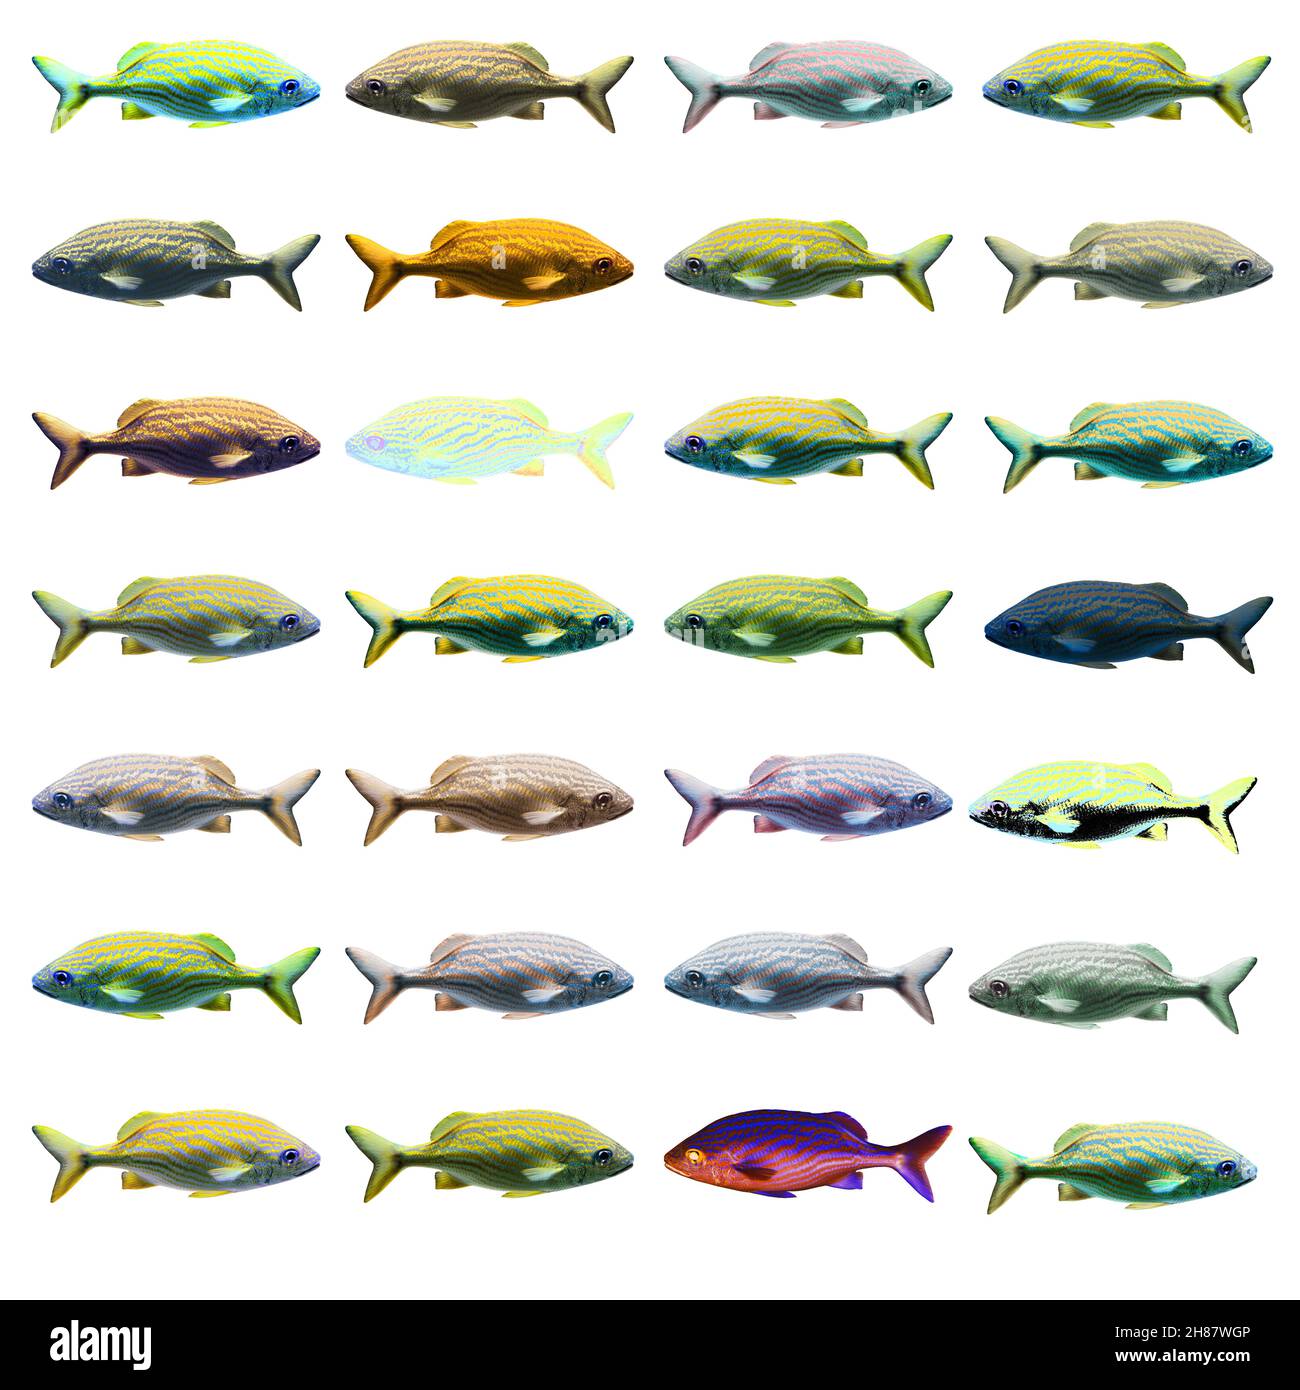 Migliorate digitalmente immagine di 28 variazioni di colore di un pesce di mare Foto Stock